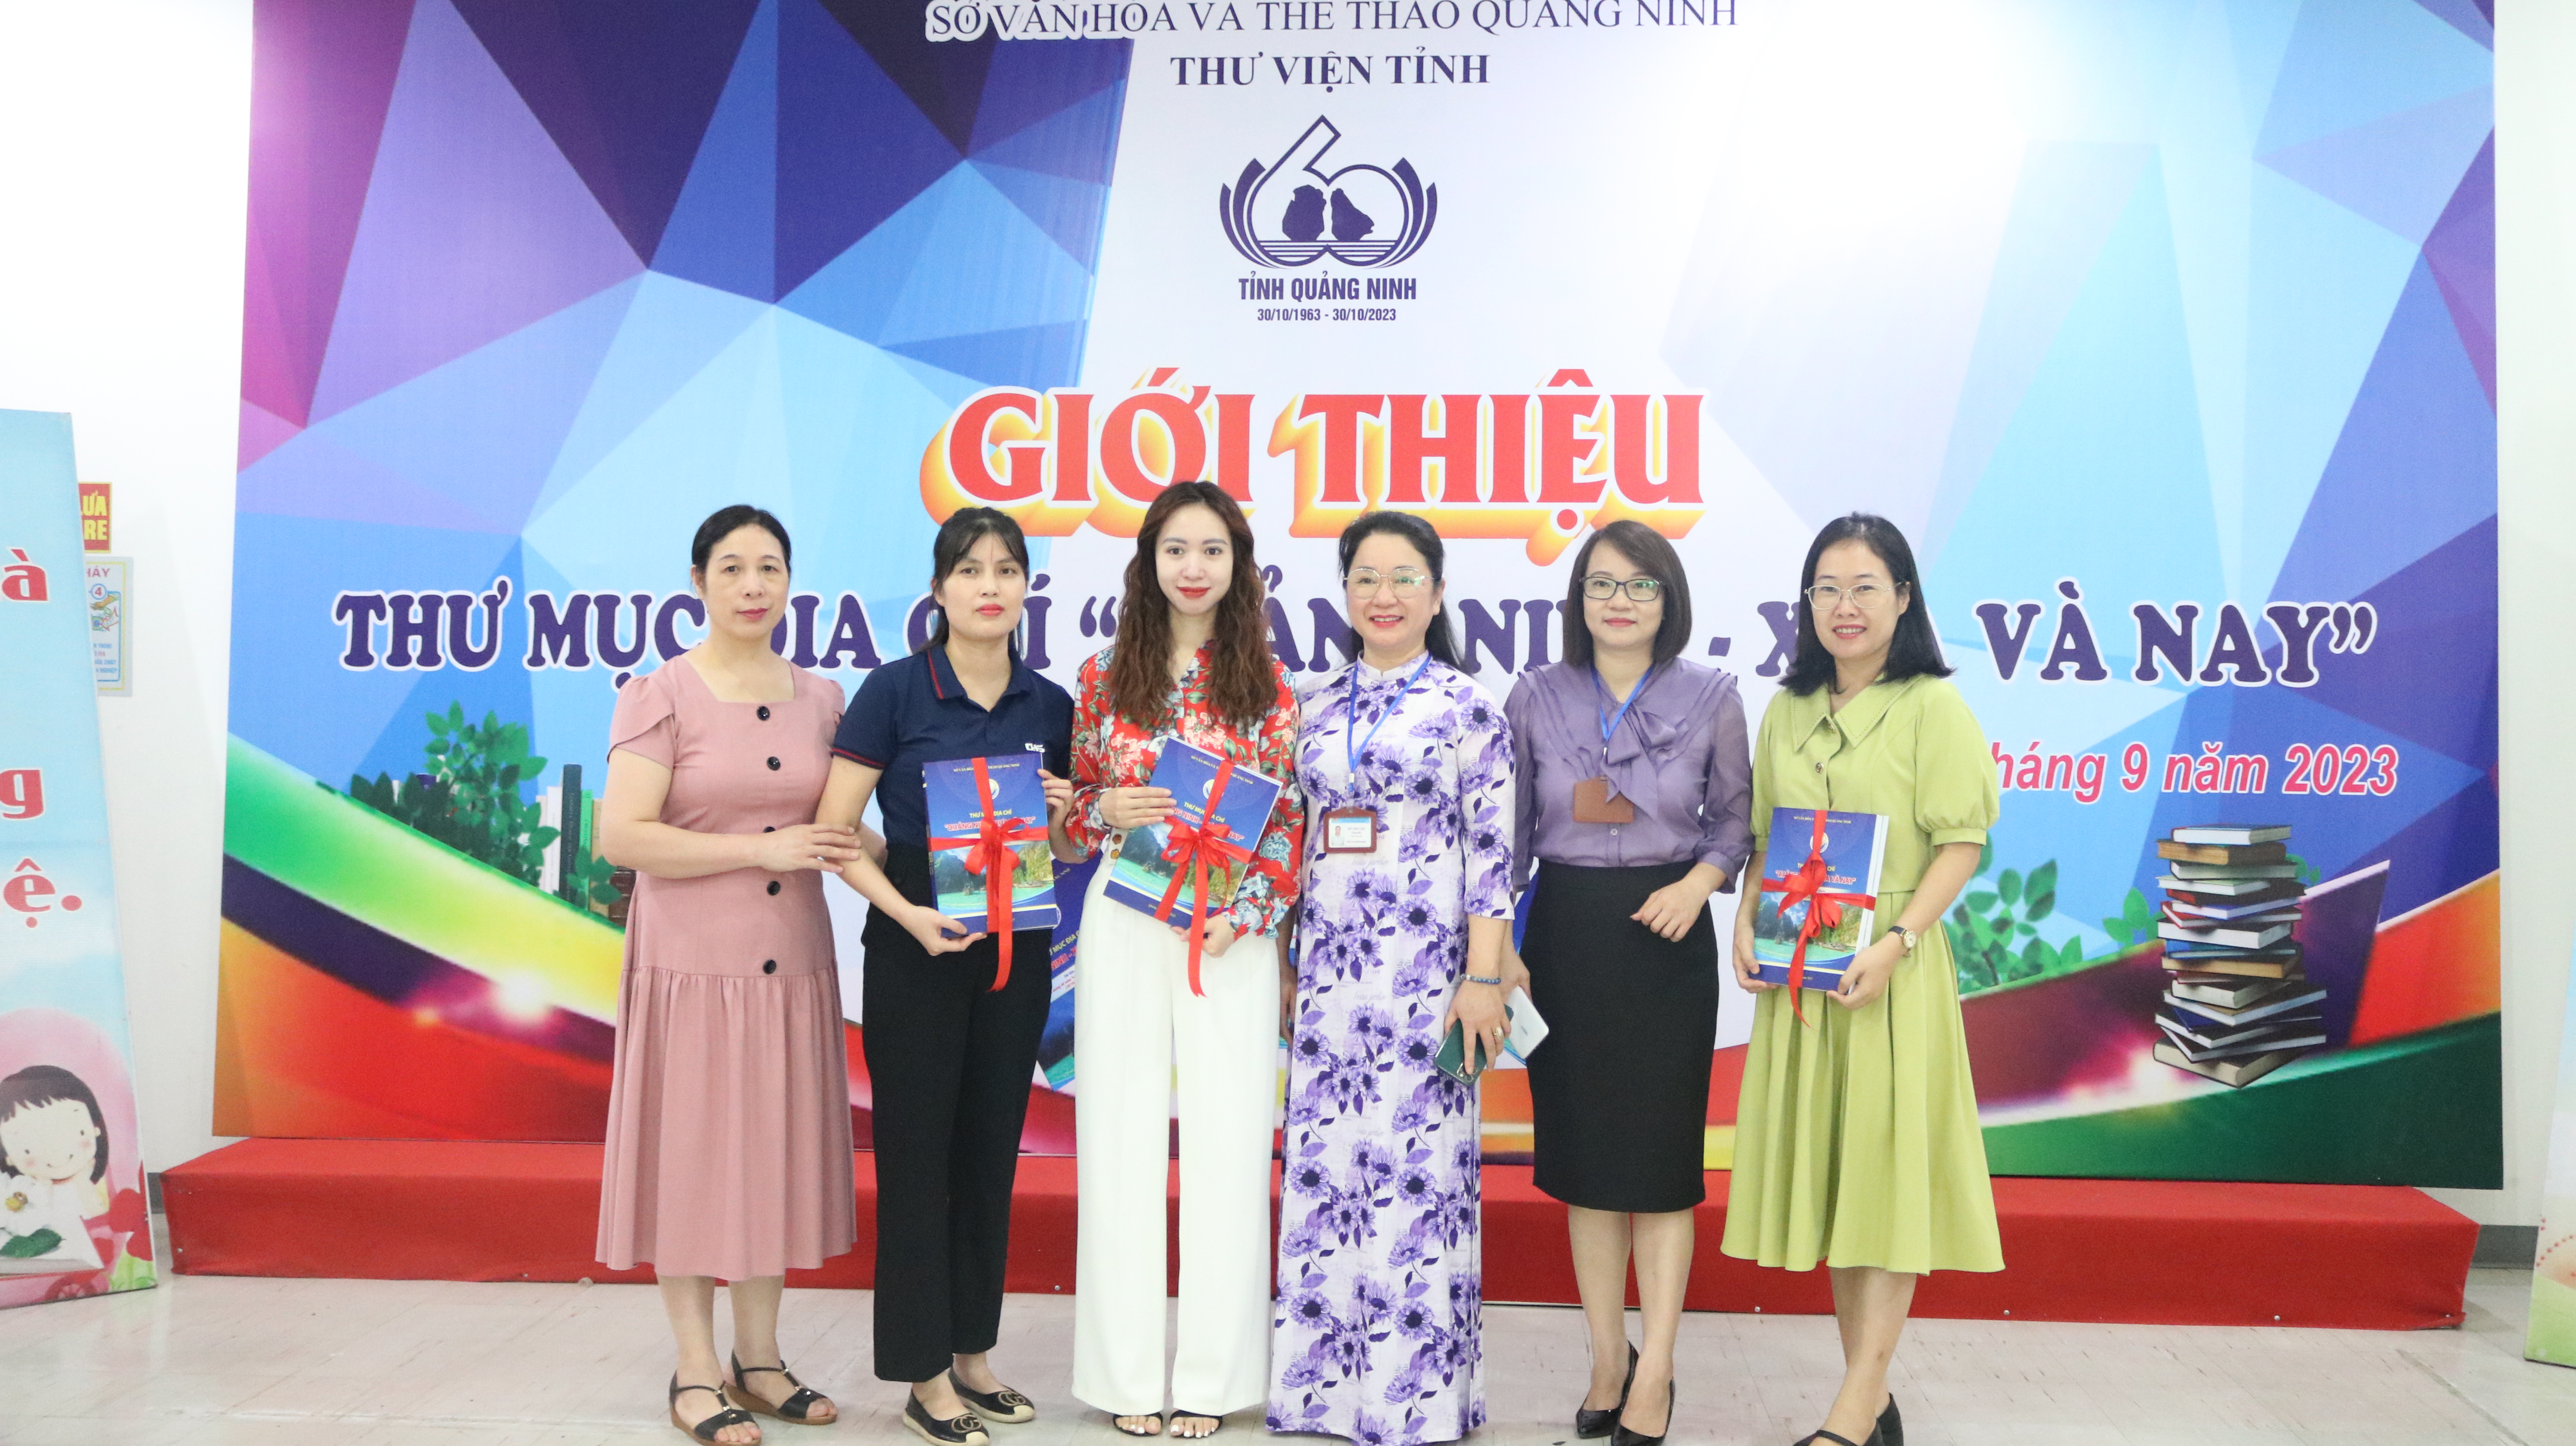 Thư viện tỉnh Quảng Ninh ra mắt  Thư mục địa chí 